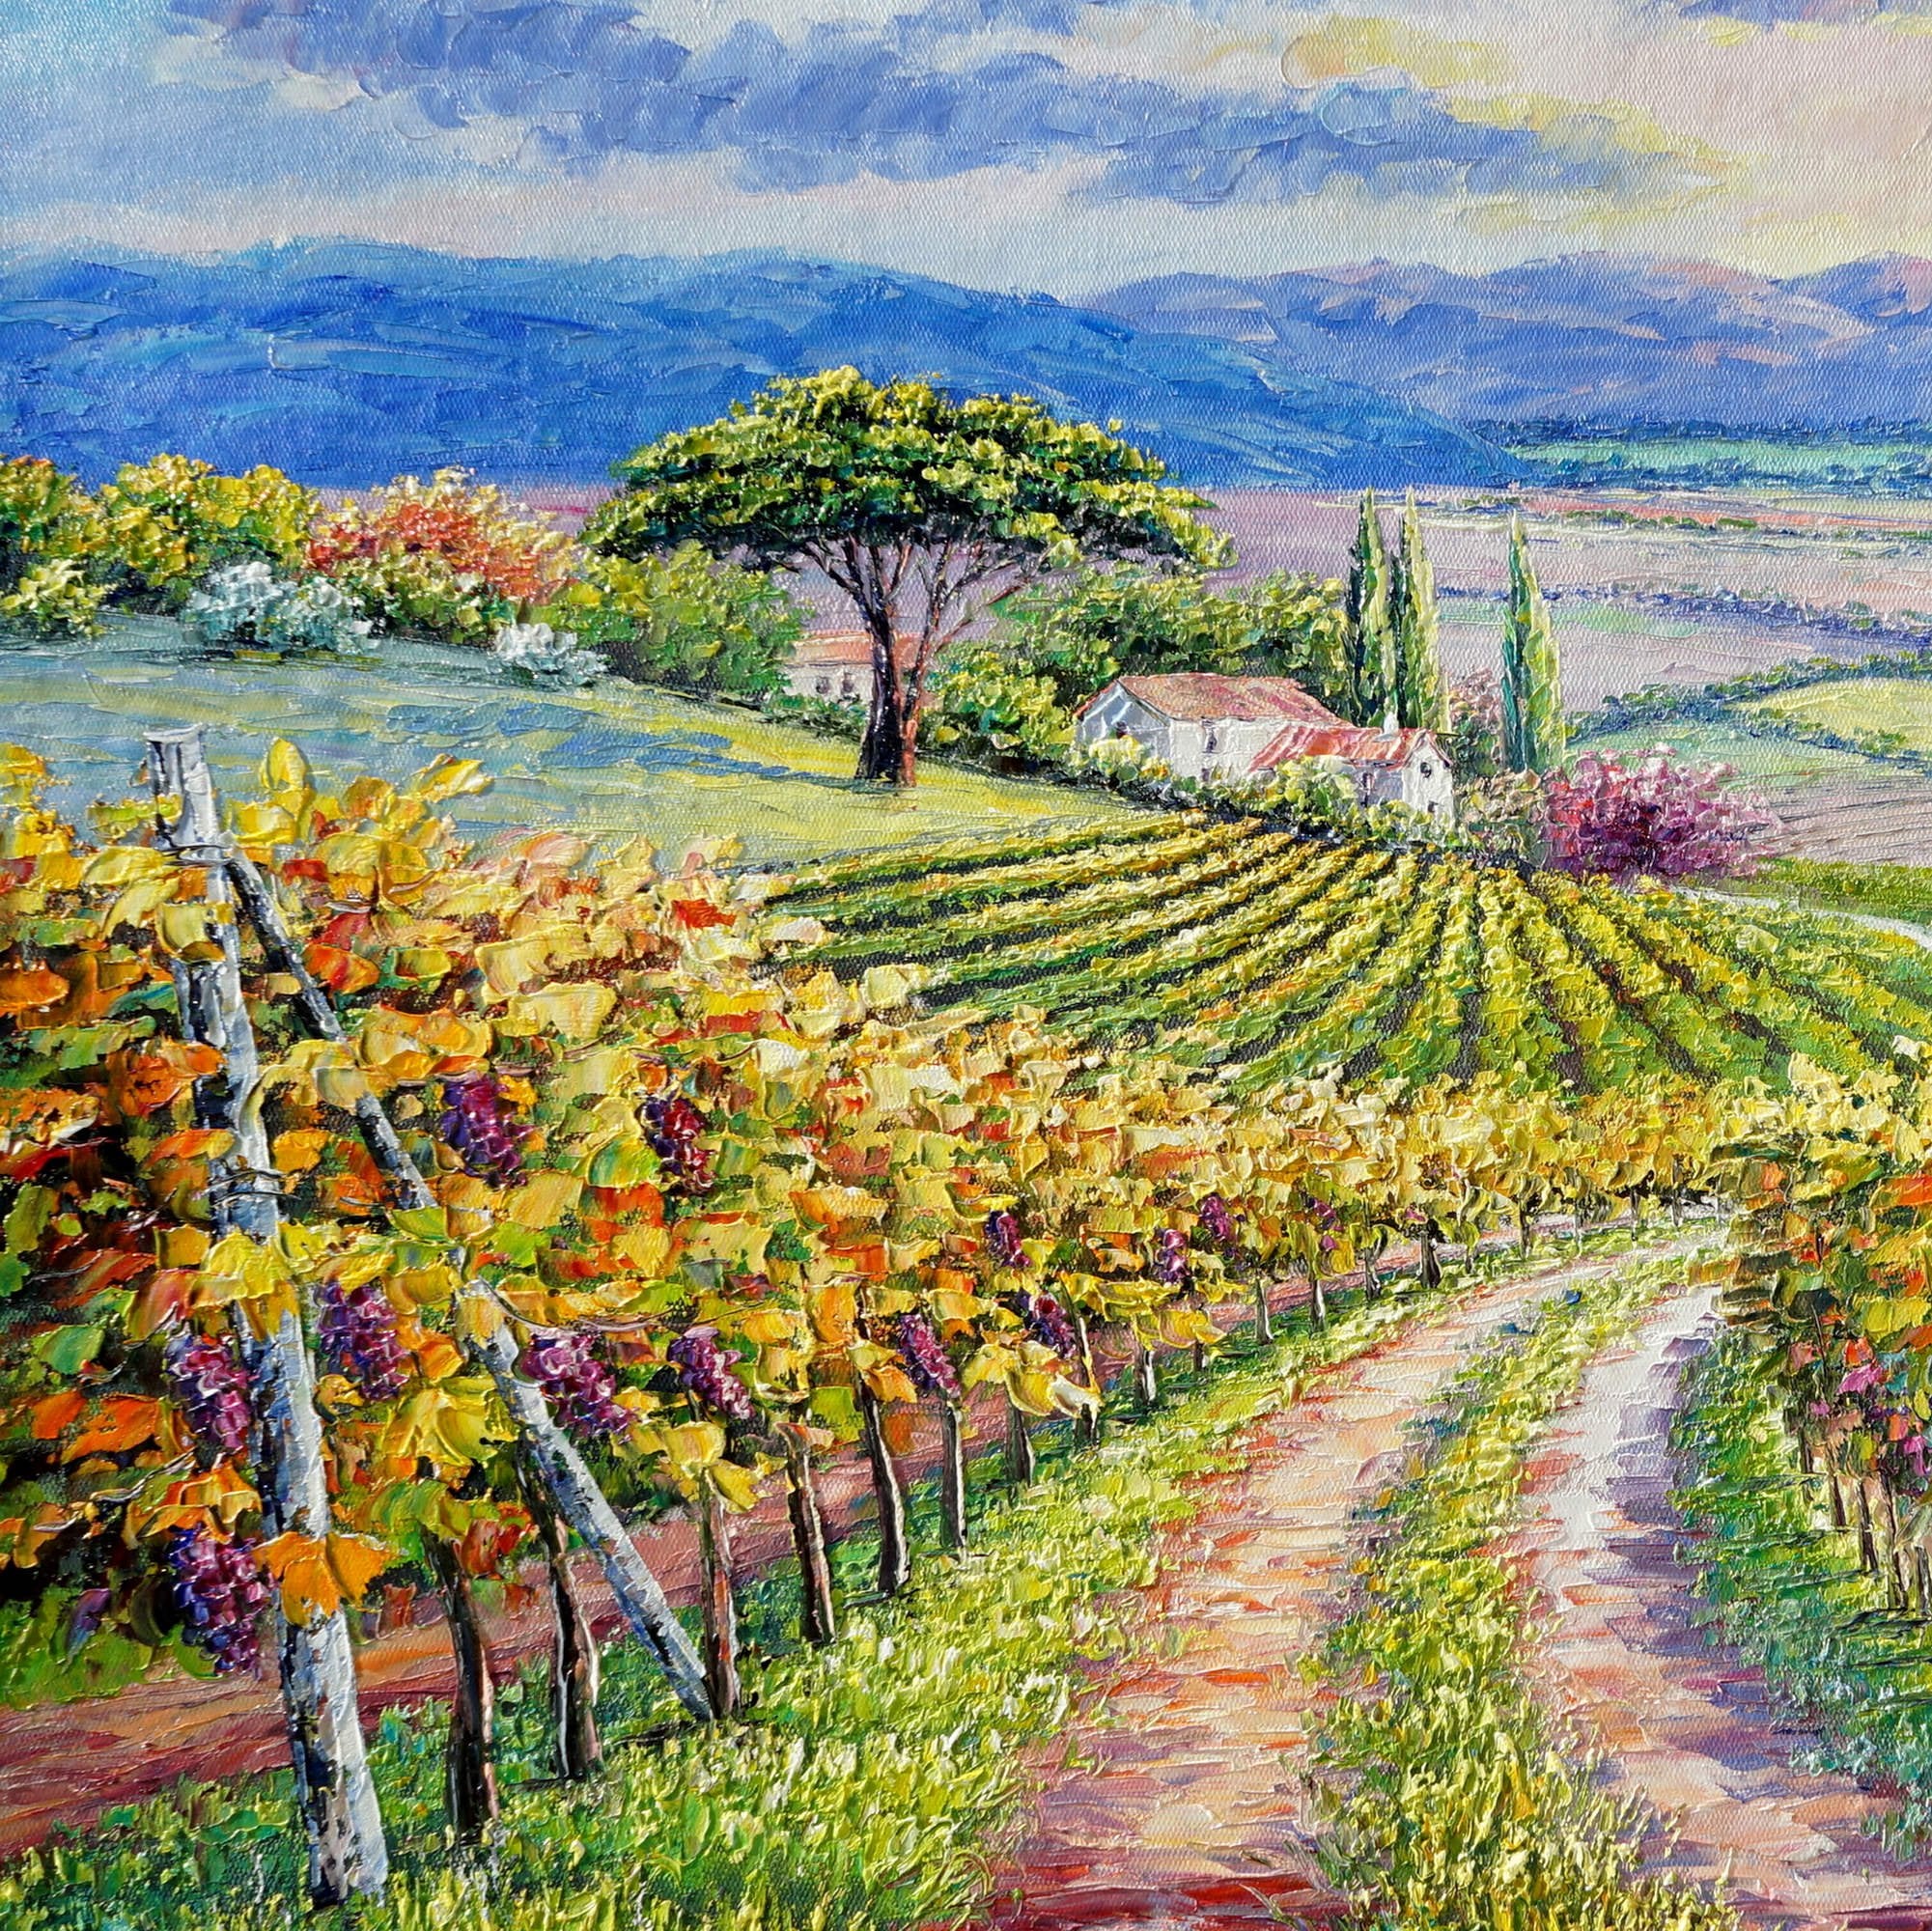 Quadro di un paesaggio vitivinicolo con vista di filari di vite e colline